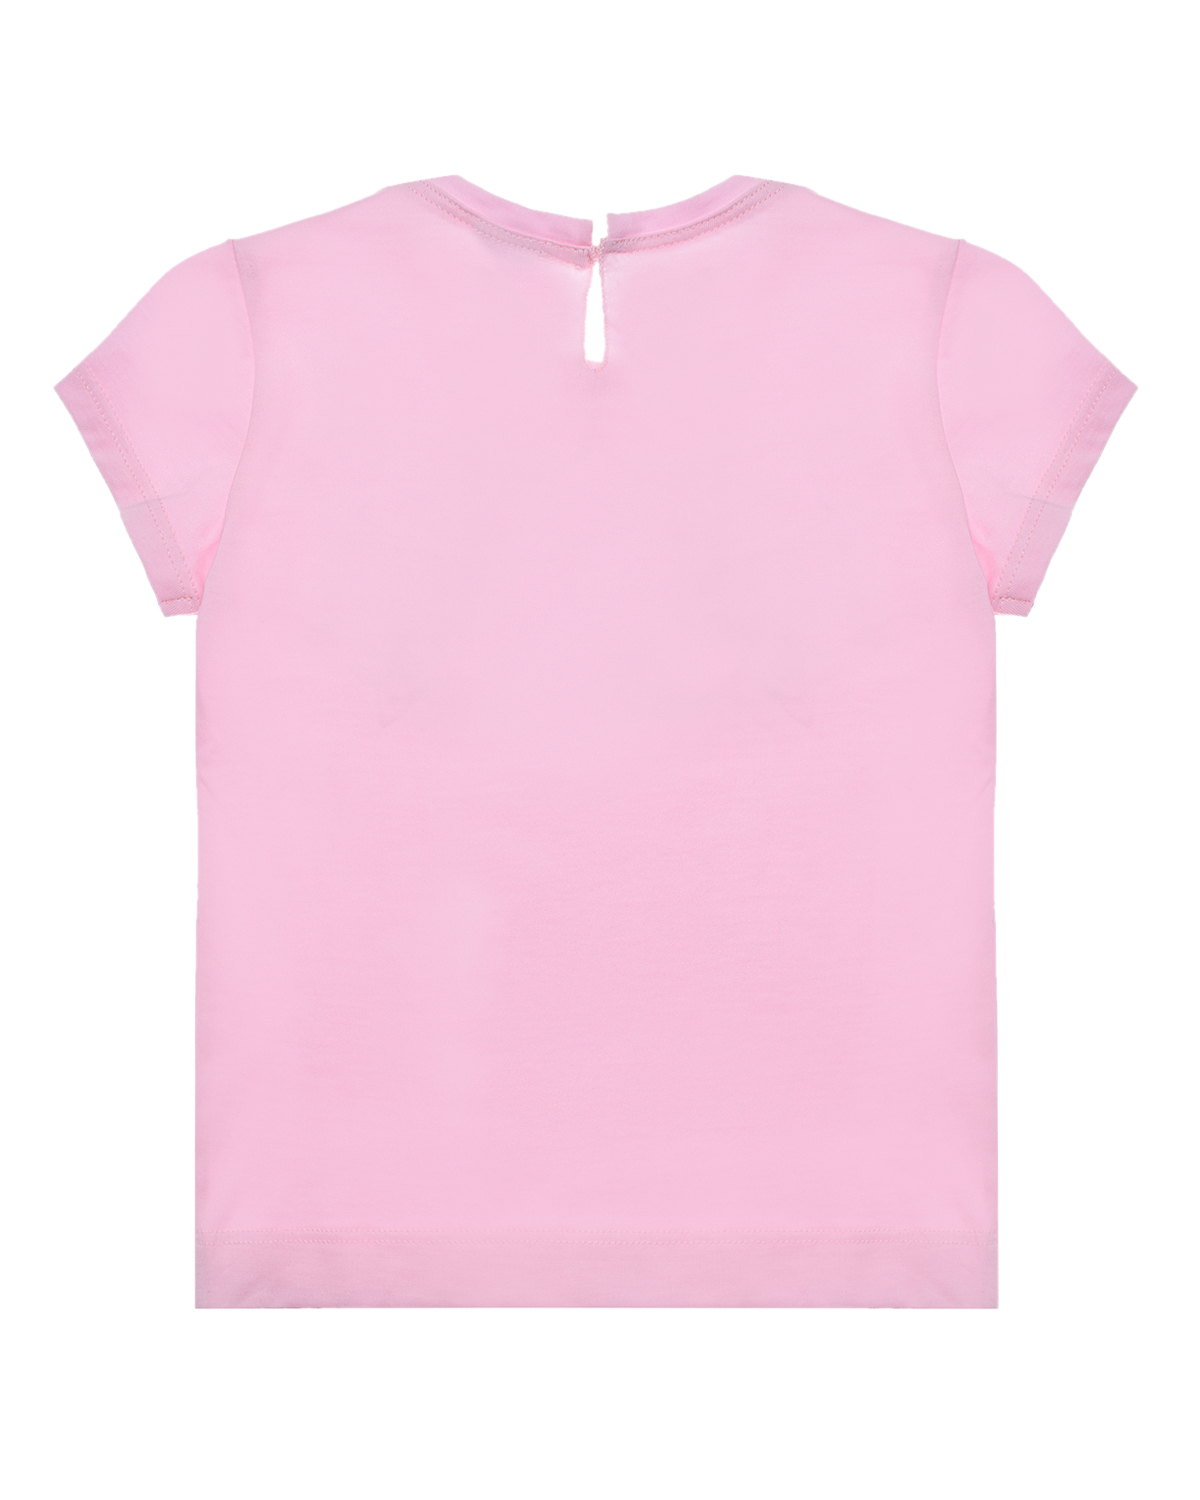 Розовая футболка с принтом "ромашка" Monnalisa детская, размер 92, цвет розовый - фото 2